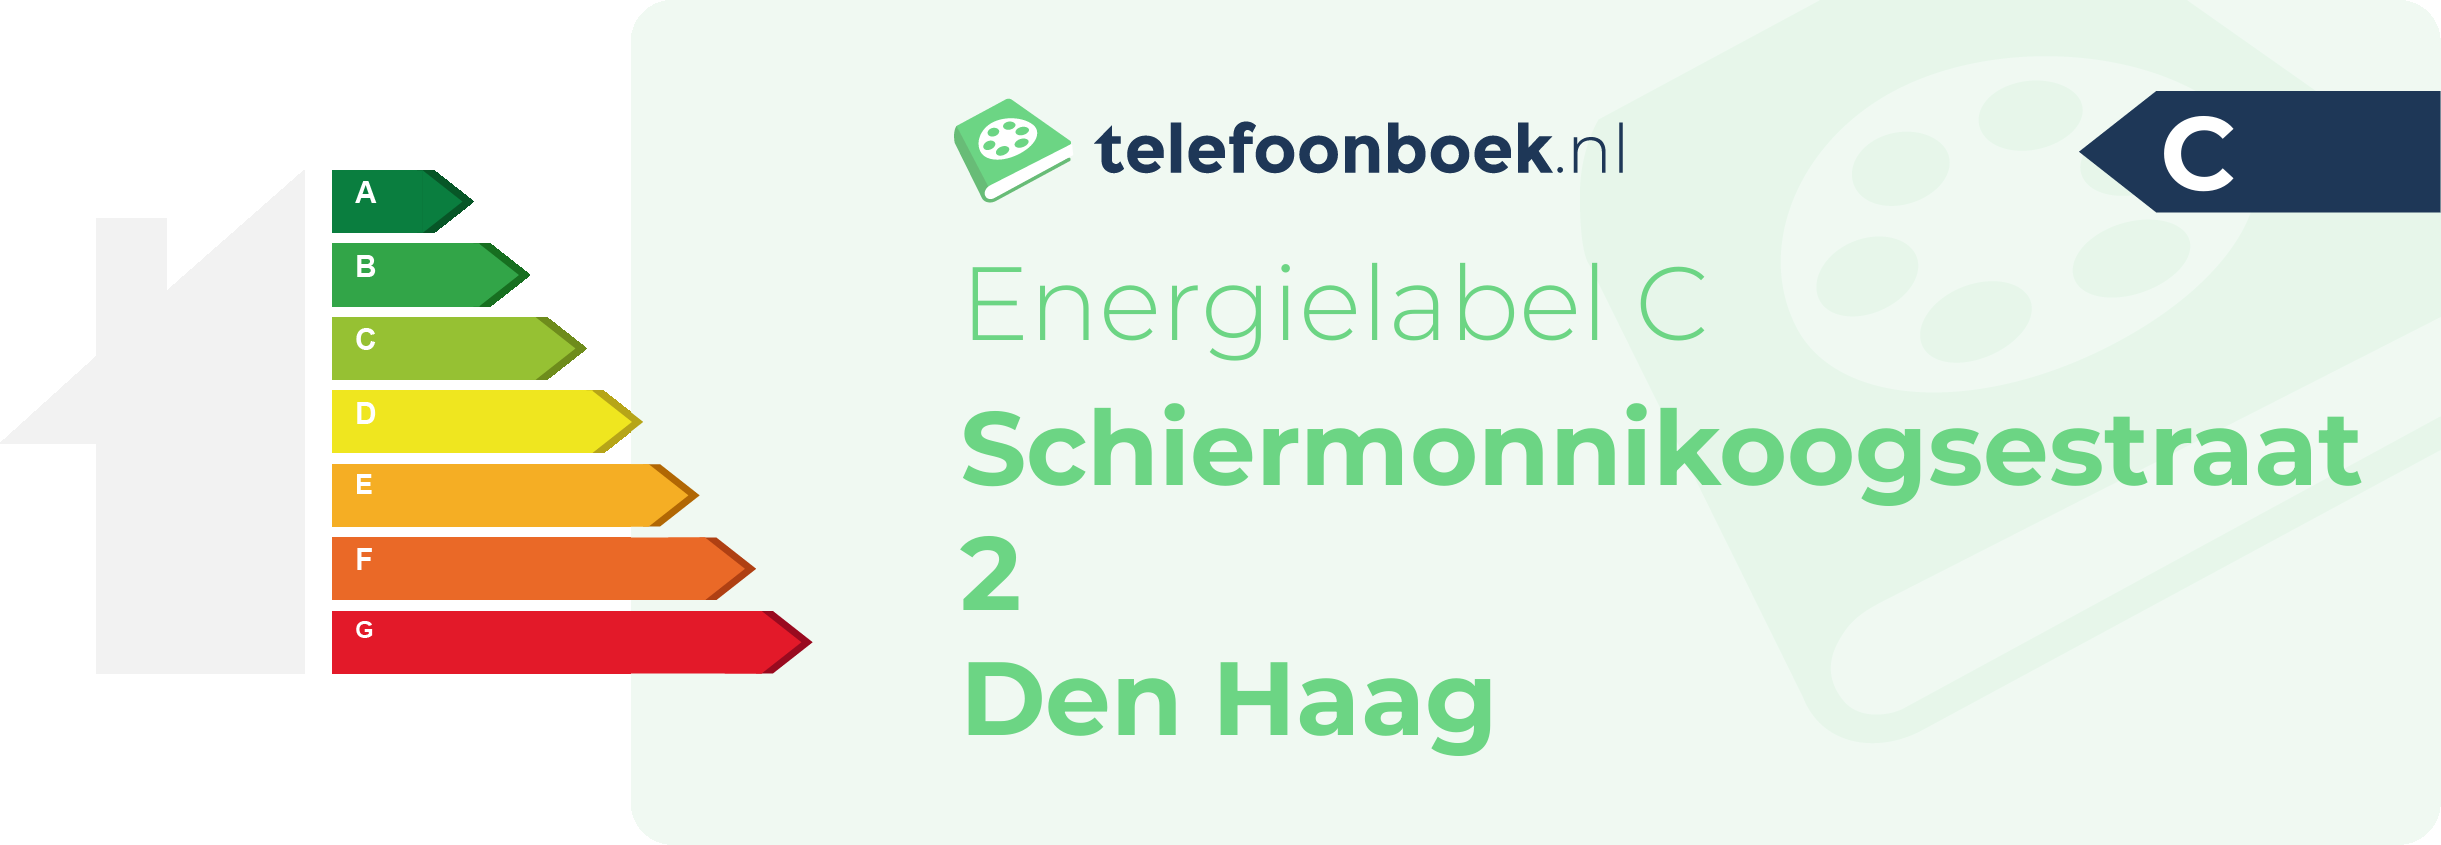 Energielabel Schiermonnikoogsestraat 2 Den Haag